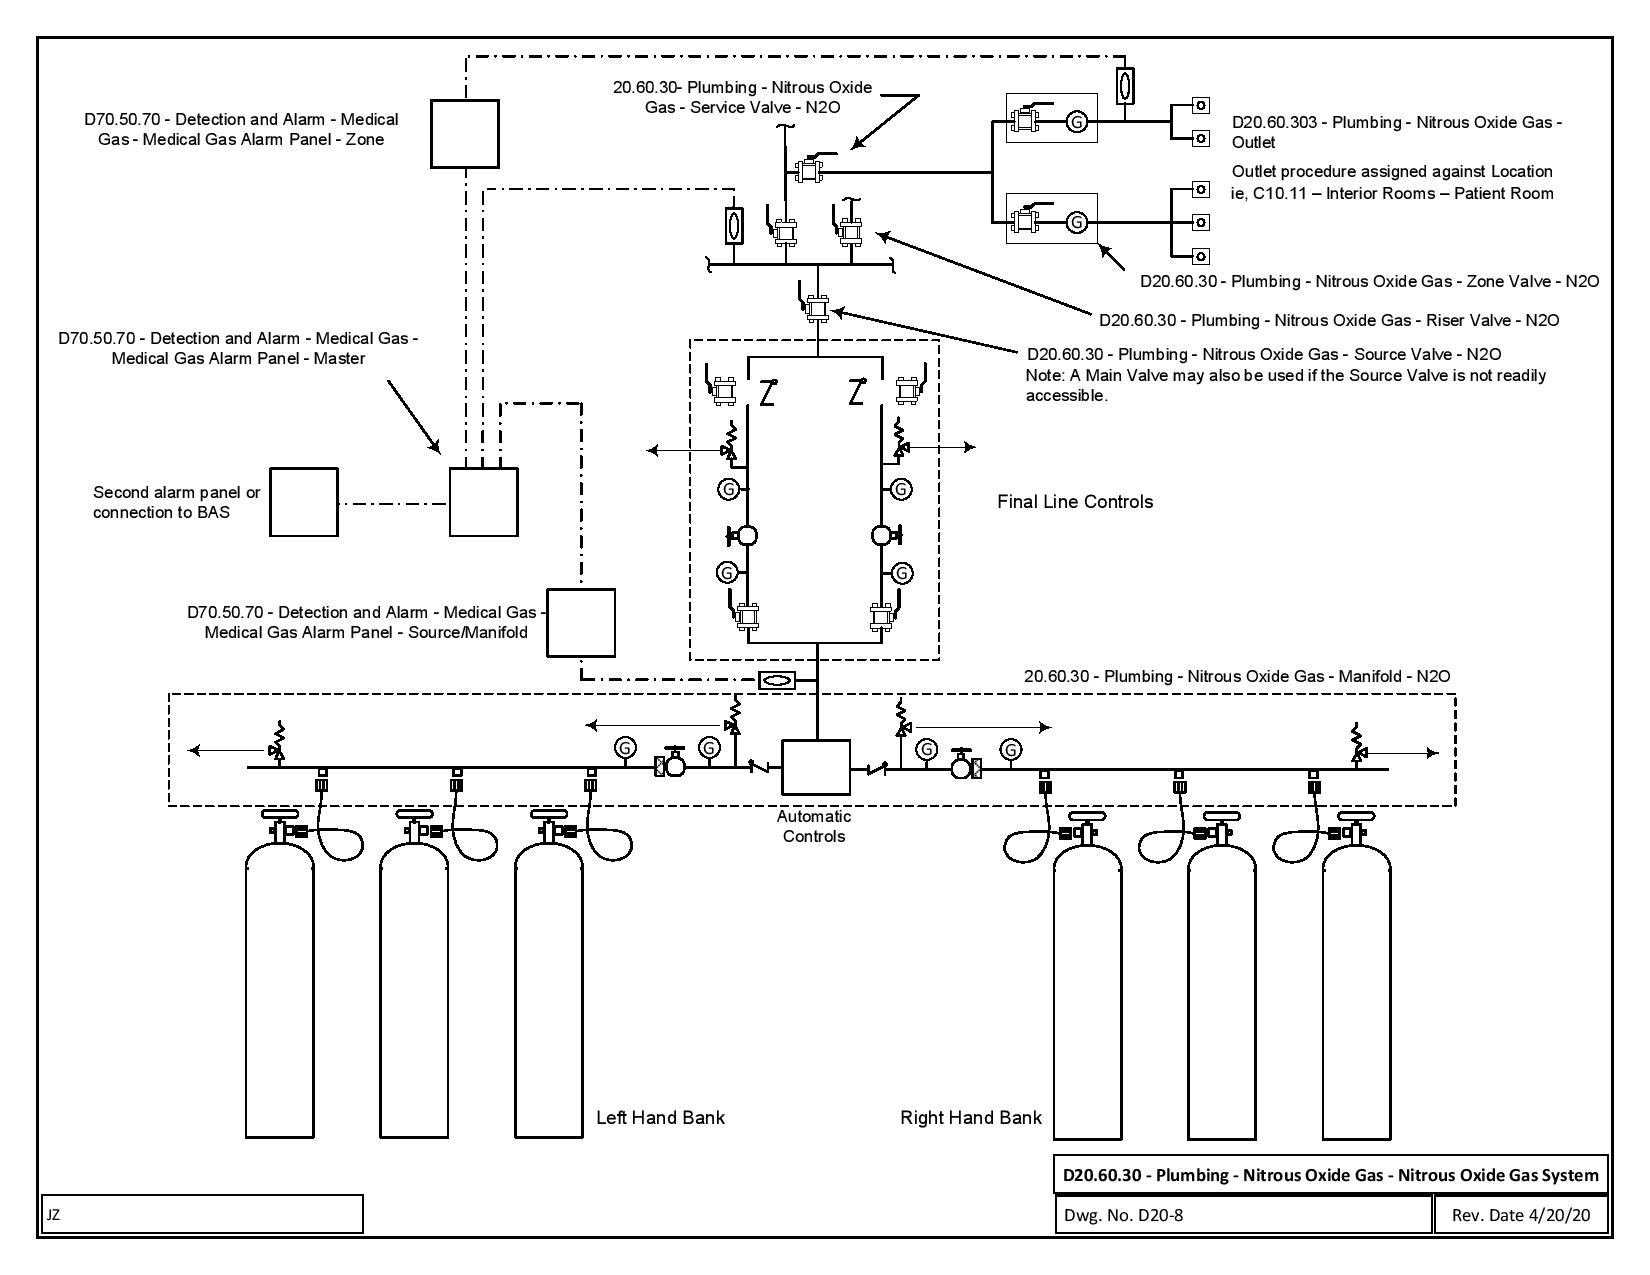 HFDS schematic diagram